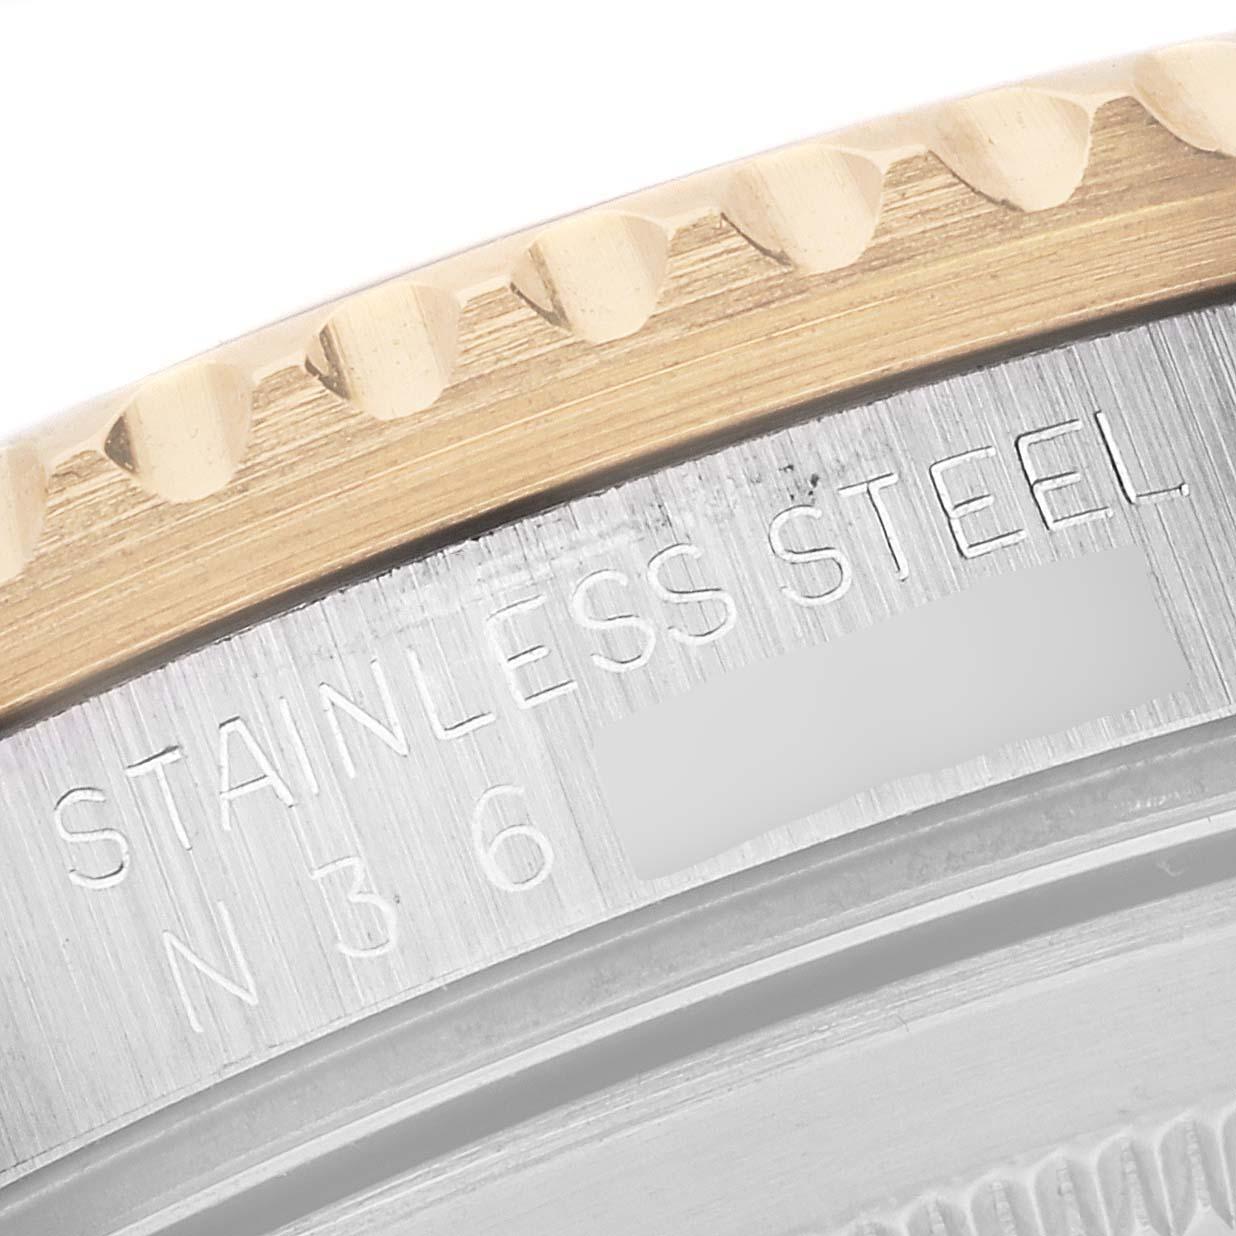 Rolex GMT Master II Yellow Gold Steel Oyster Bracelet Mens Watch 16713. Mouvement automatique à remontage automatique, officiellement certifié chronomètre. Boîtier en acier inoxydable de 40 mm de diamètre. Logo Rolex sur une couronne. Lunette